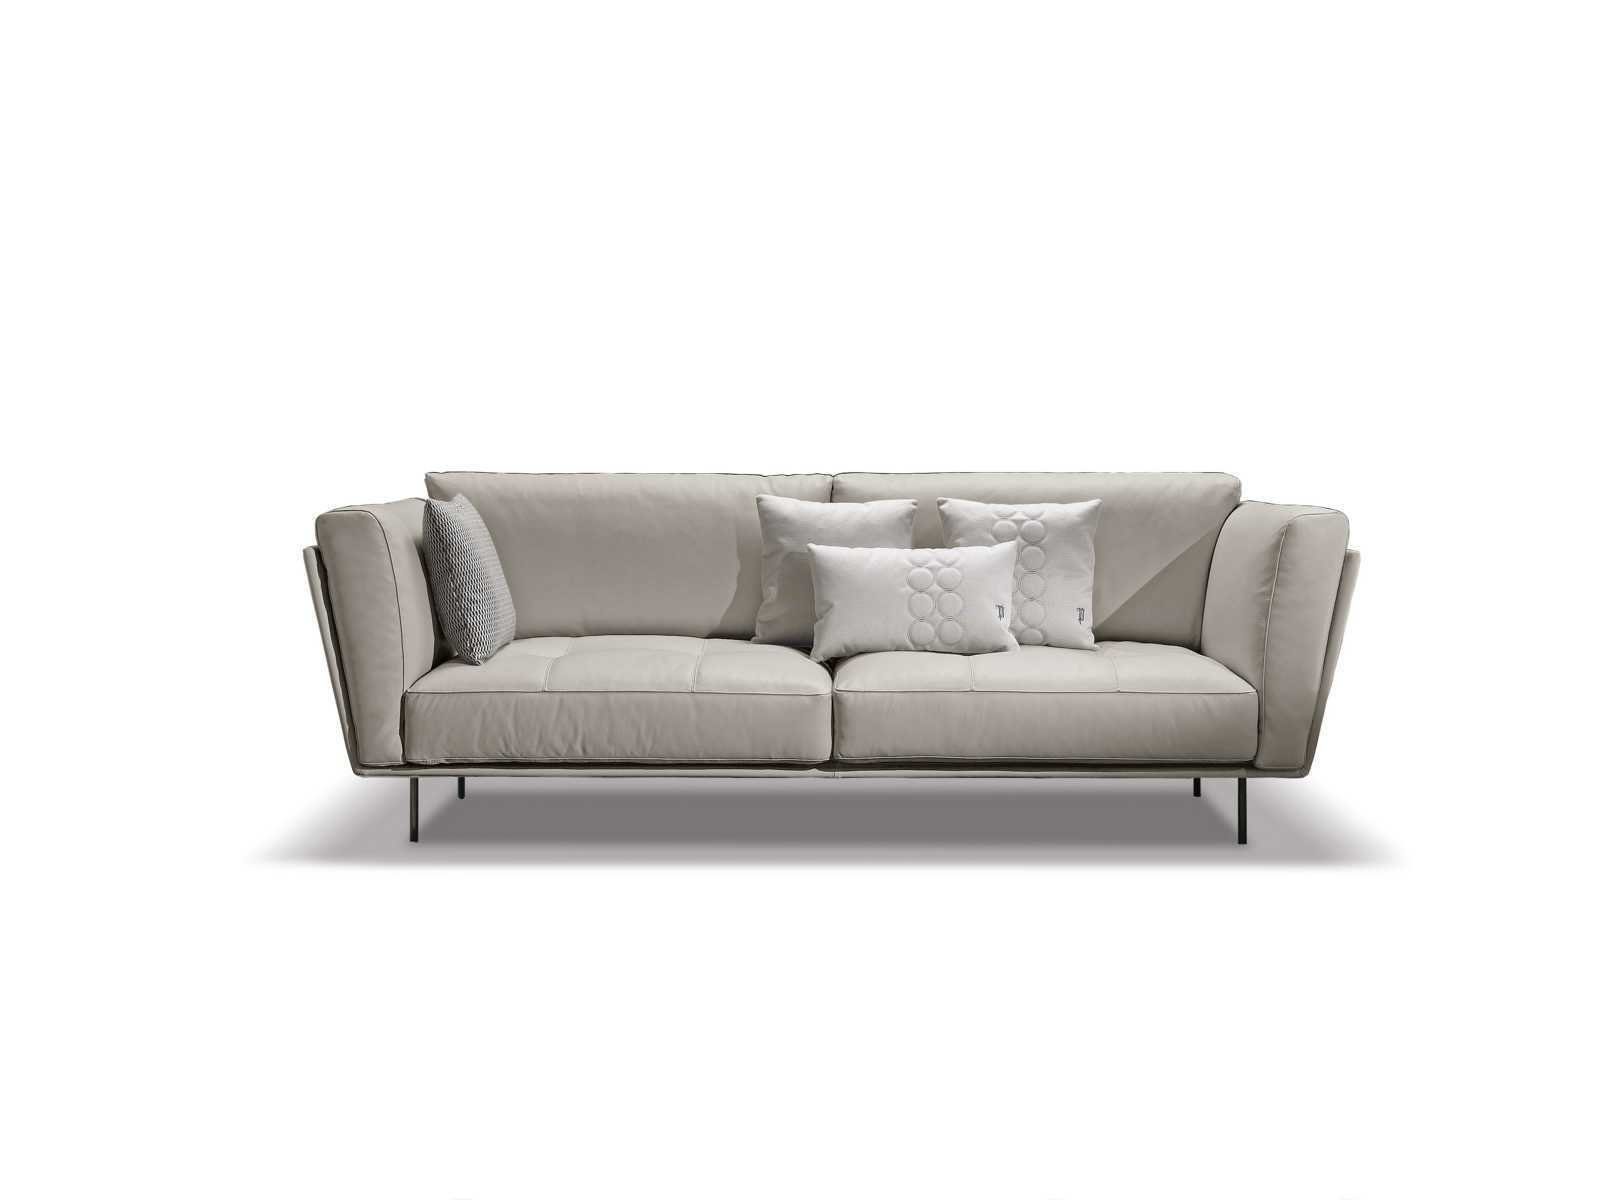 Couches Modern Made Europe Sitzer Sofa 3 Sofas Stoff Sofa JVmoebel Gepolstert Couch Luxus Beige, Weiß in